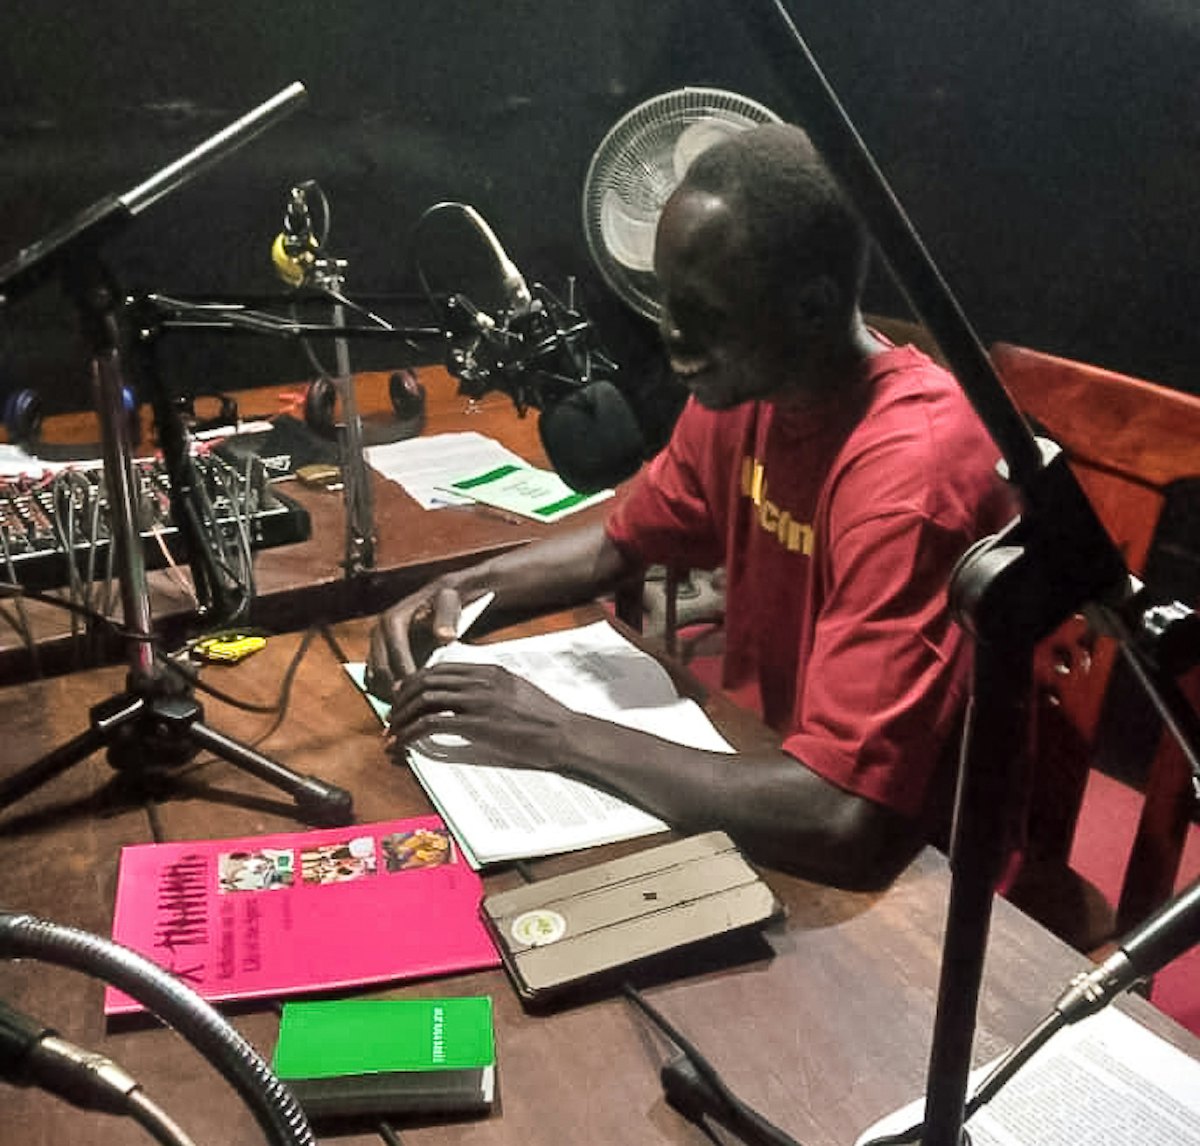 بهائیان «کامولی» (Kamuli) دراوگاندا، روزانه برنامه‌های رادیویی دربارهٔ اهمیت زندگی آمیخته به نیایش پخش می‌کنند.